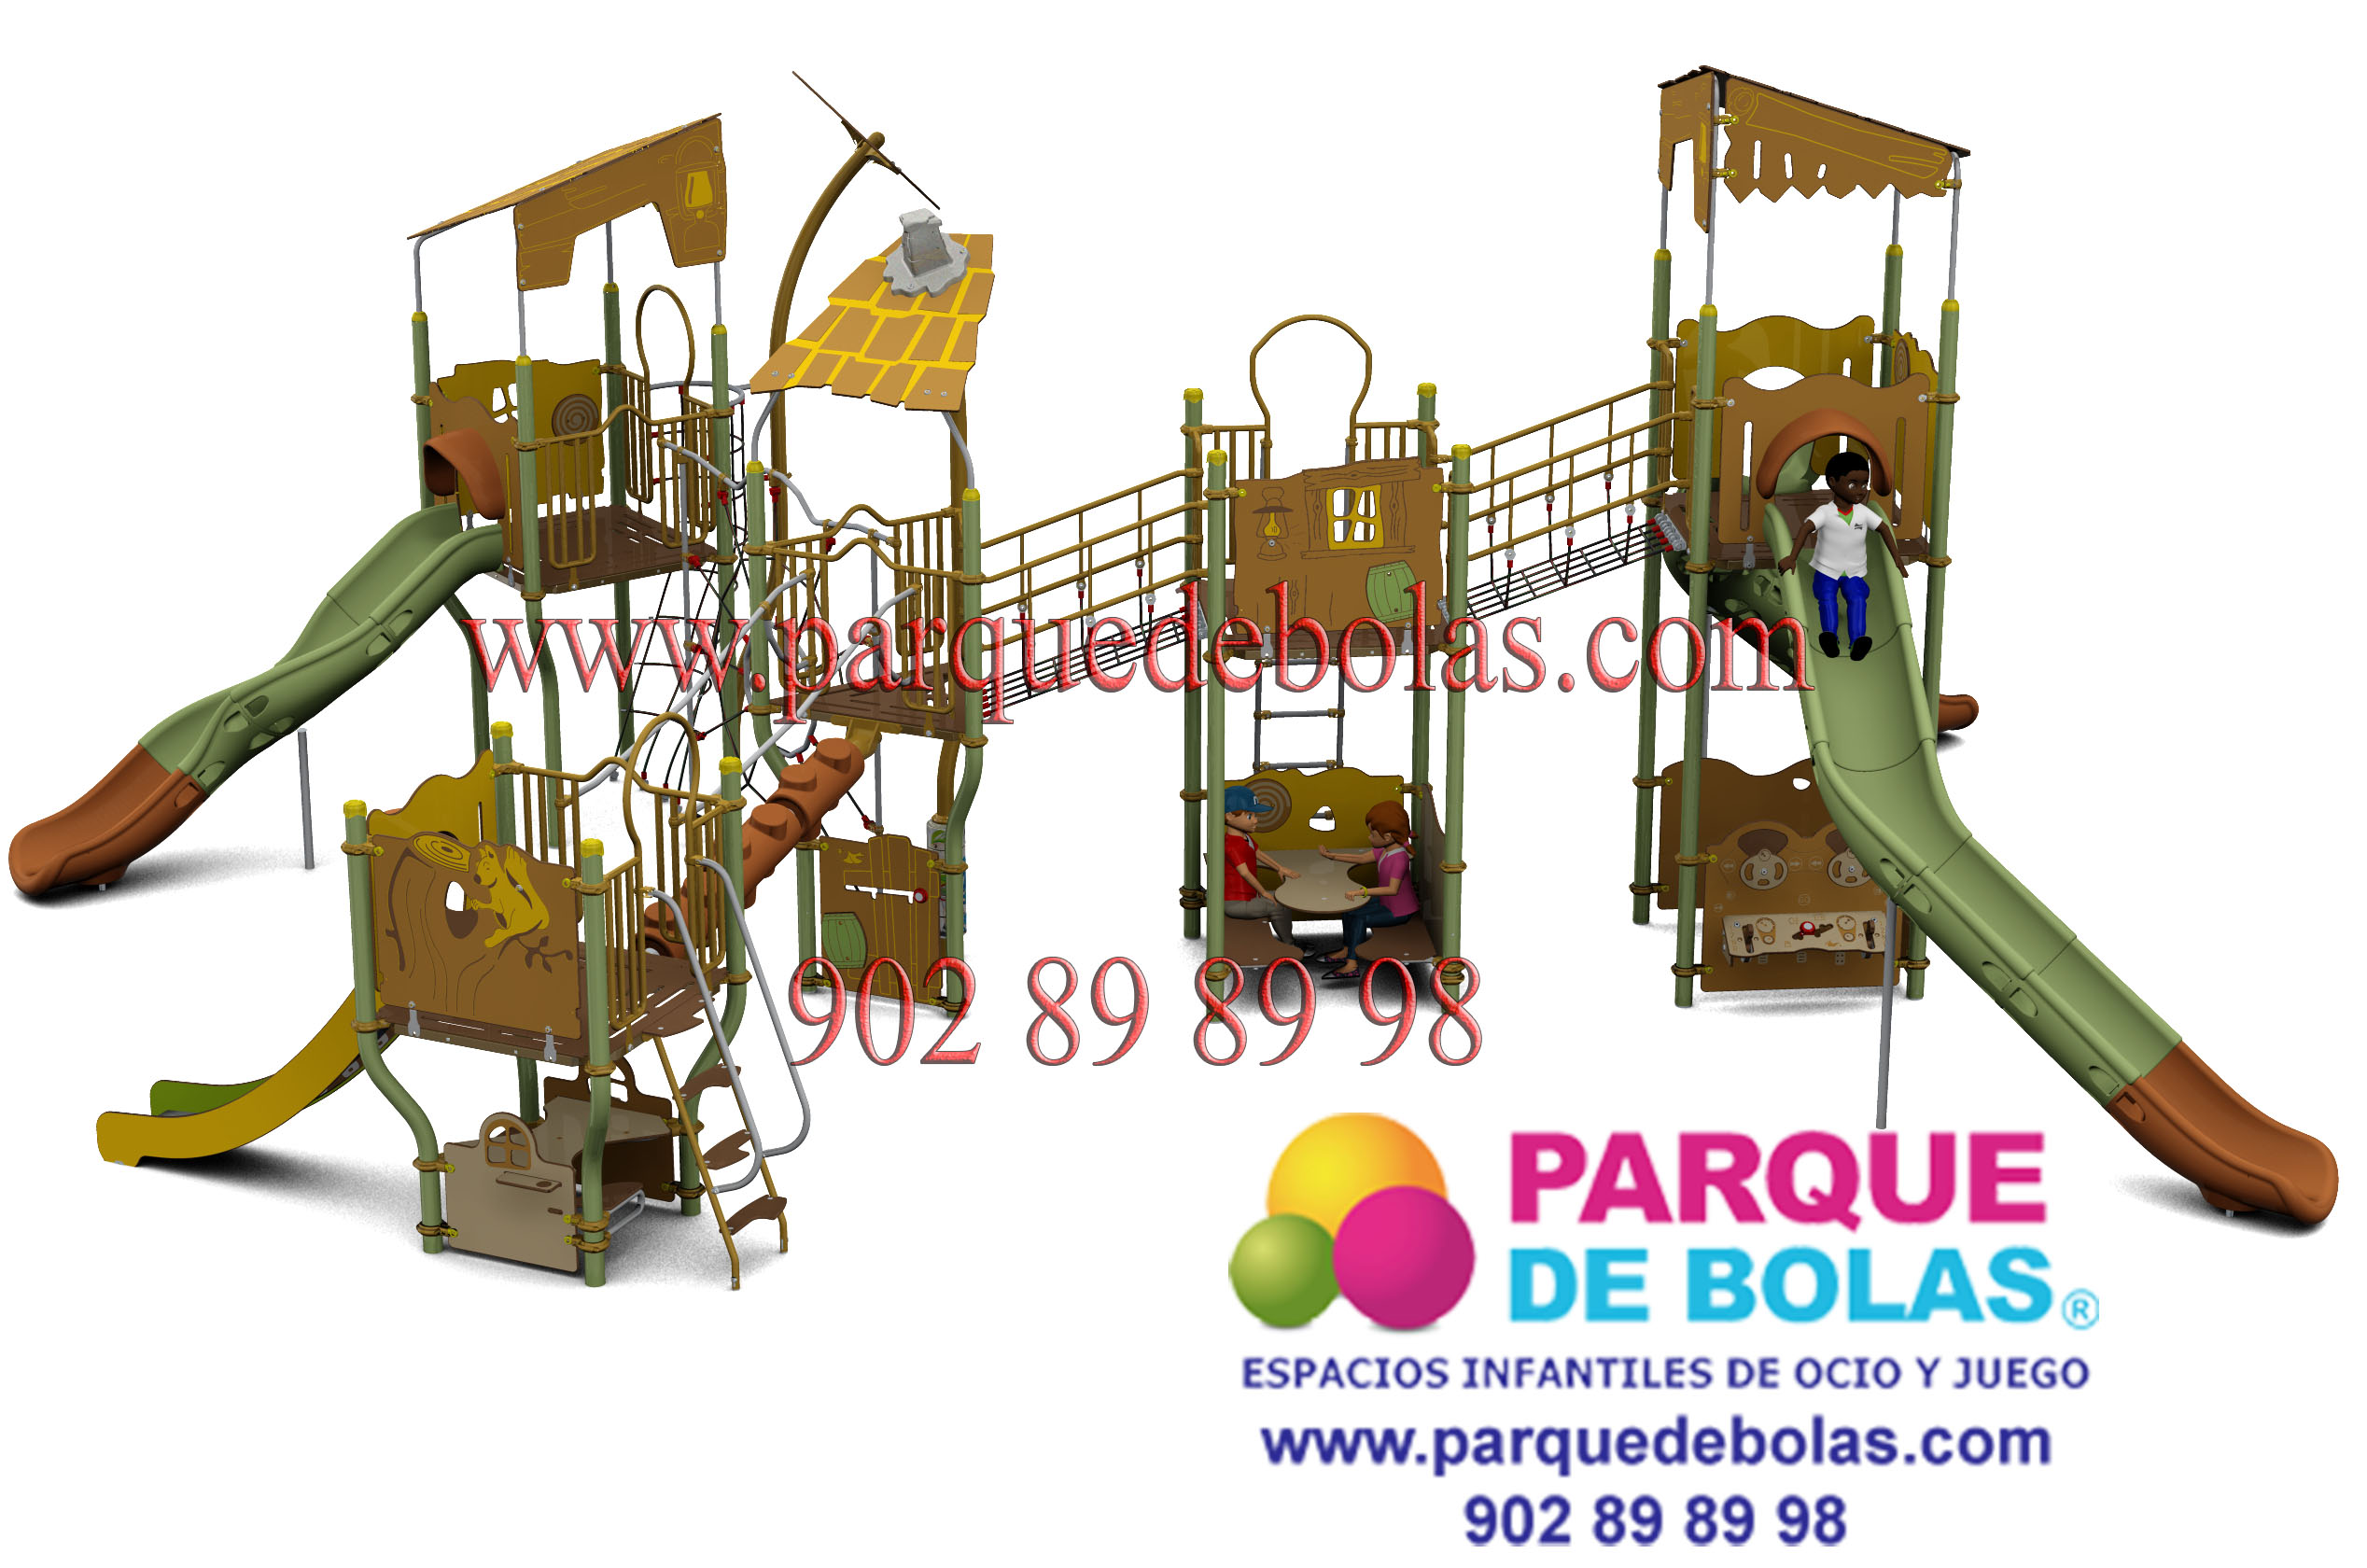 https://parquedebolas.com/images/productos/peq/parque%20infantil%20JCX-0032%3Bh%3D3100%2Cw%3D2600%20copia.jpg